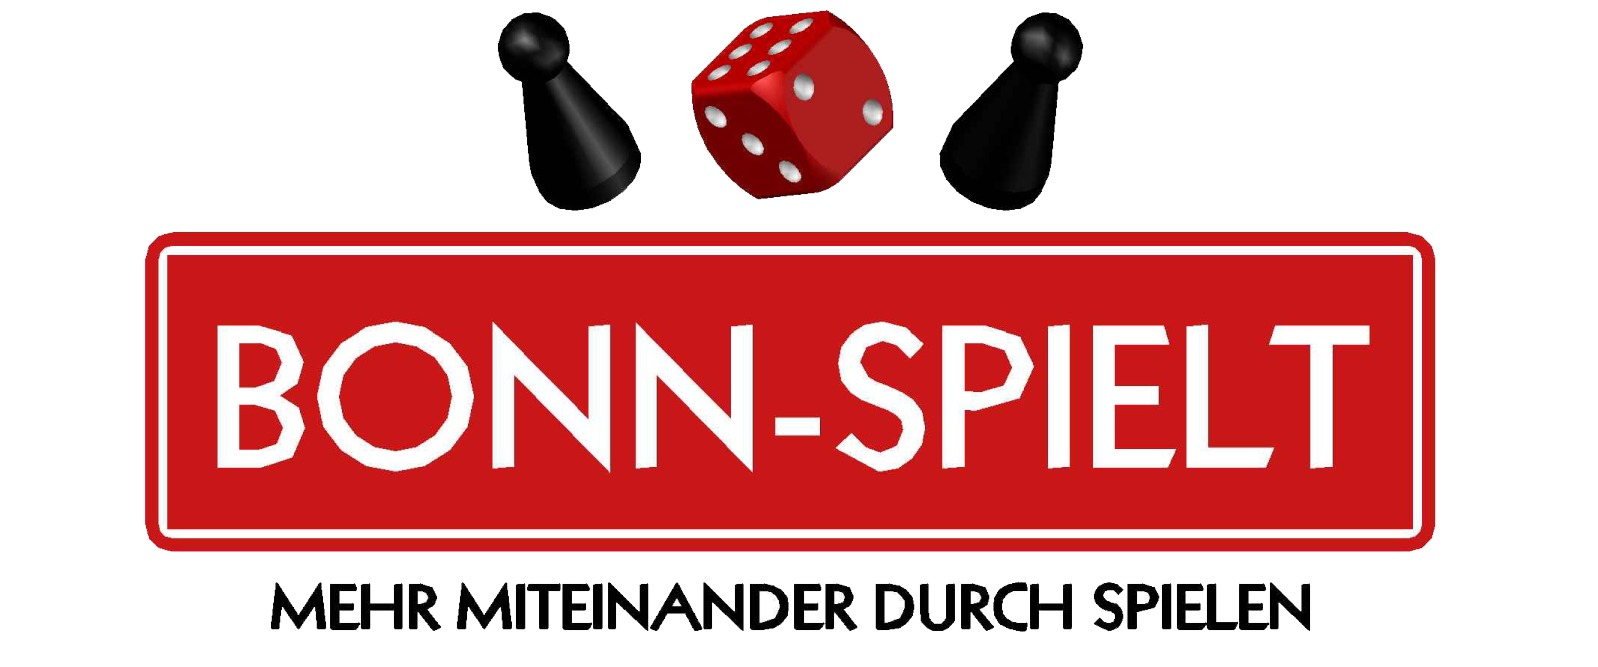 BONN-SPIELT 2018